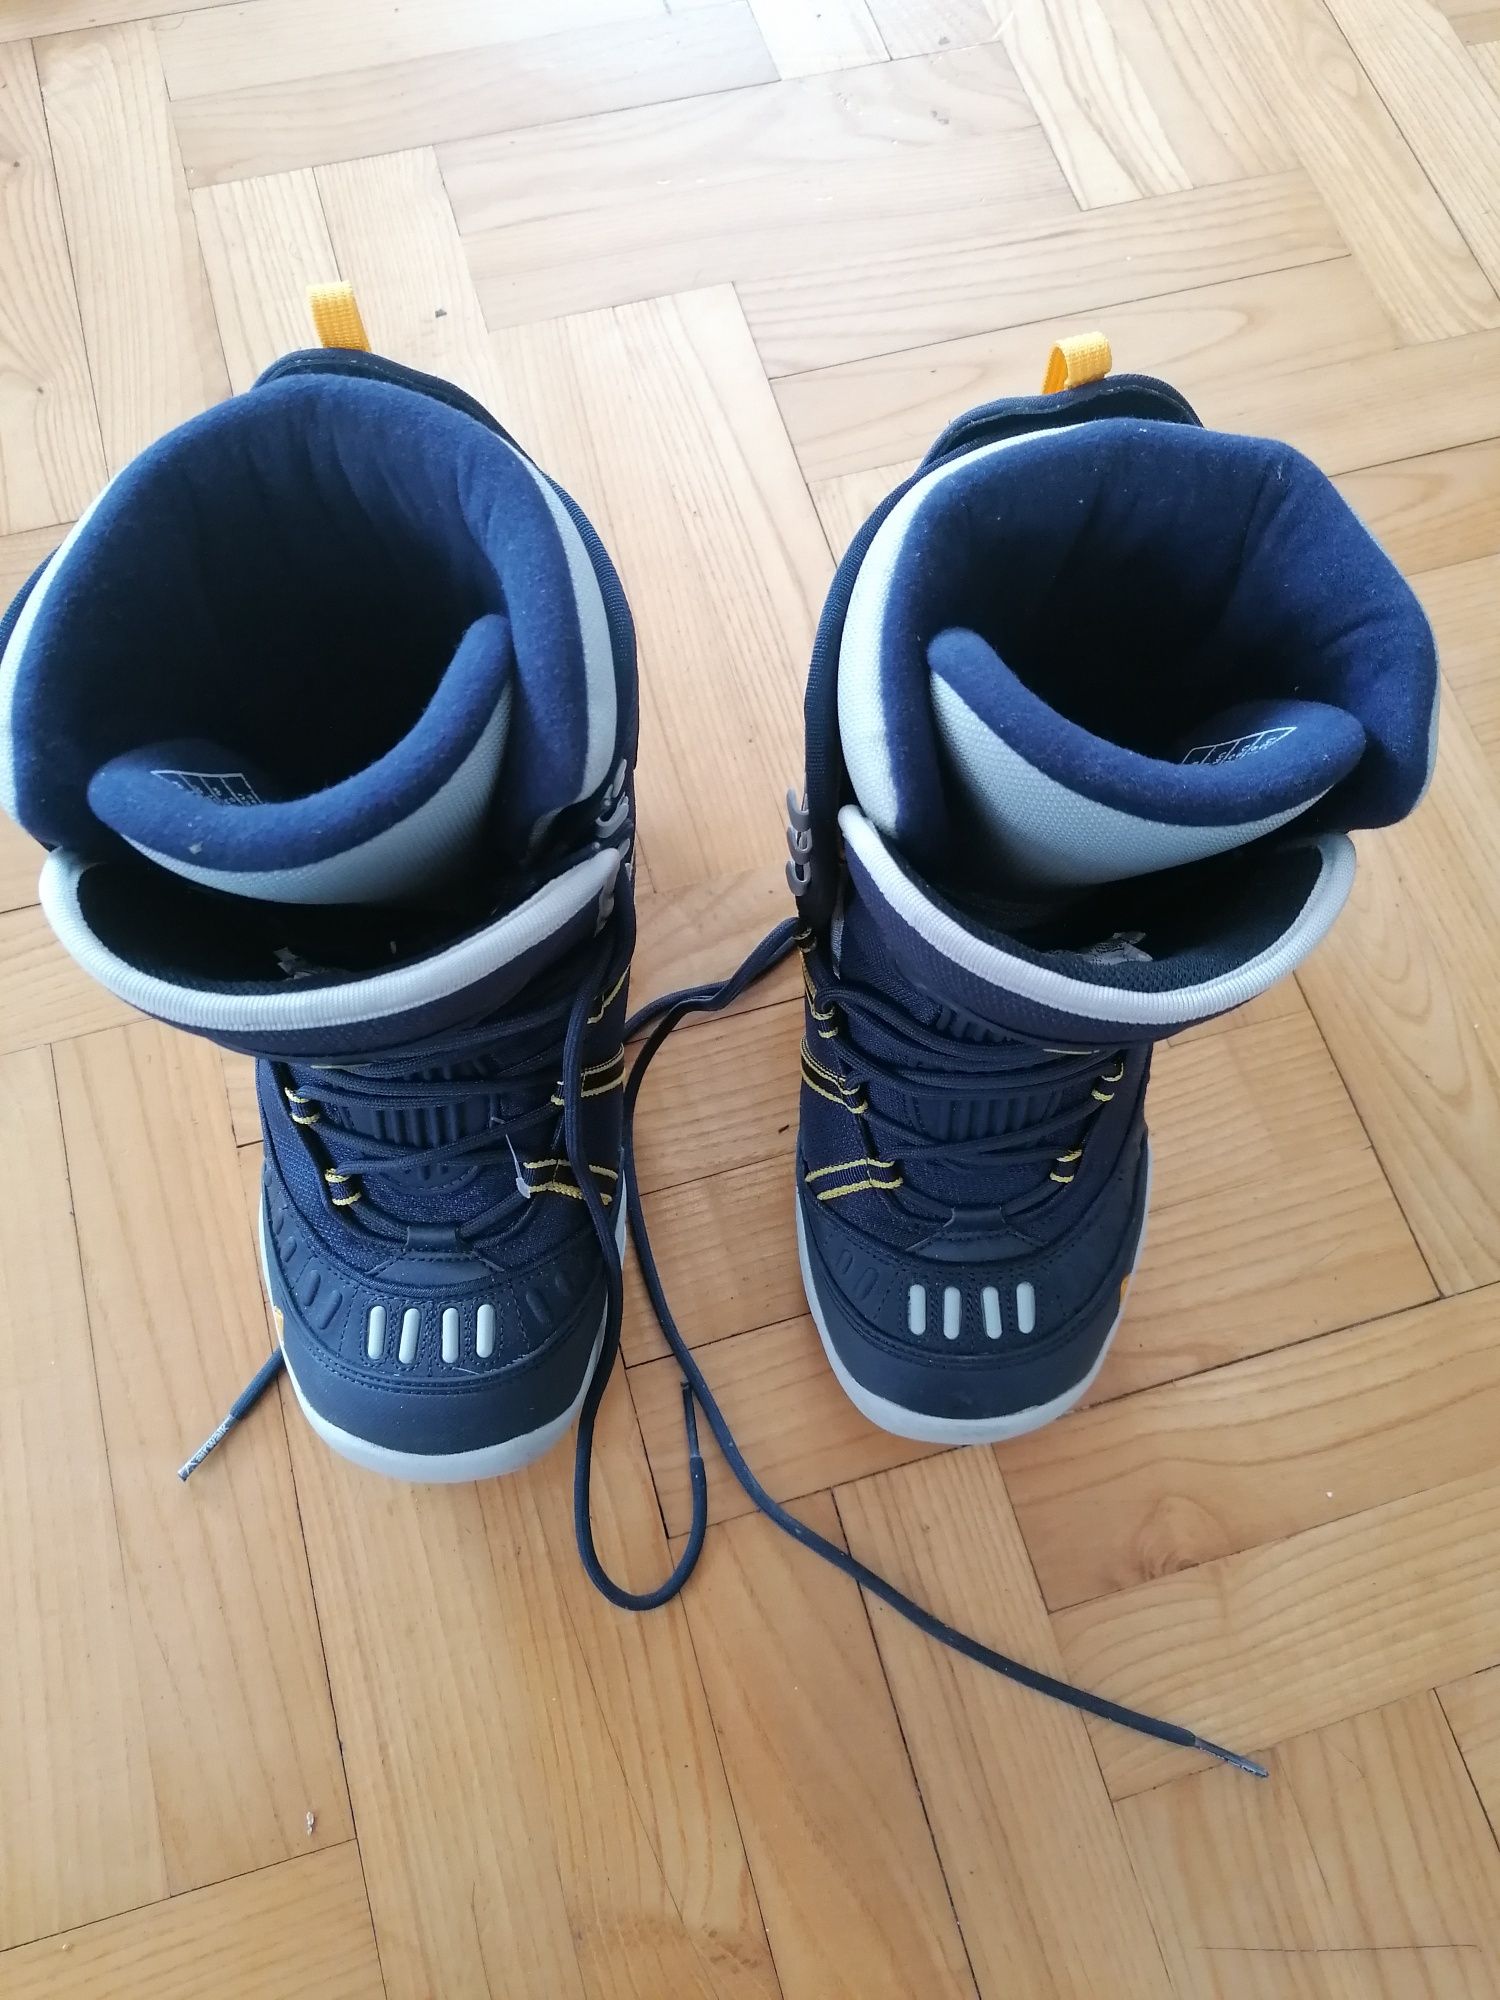 Nowe buty snowboardowe 39 airwalk